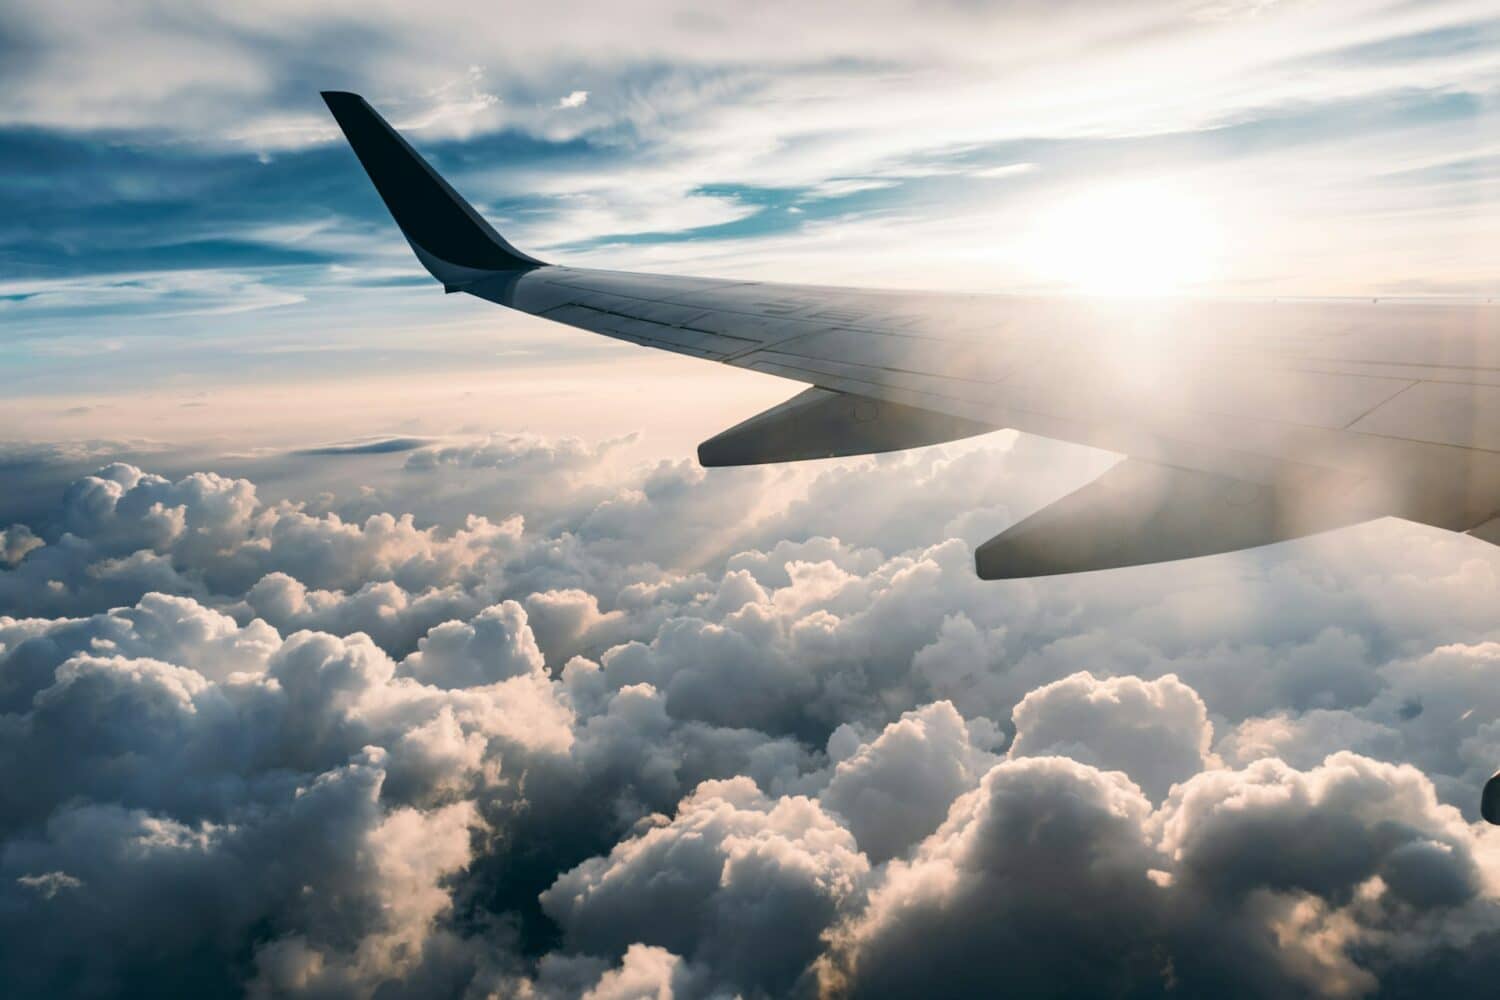 vista da asa do avião contra o por do sol e acima das nuvens brancas e fofinhas, para ilustrar o post de Seguro Viagem LATAM